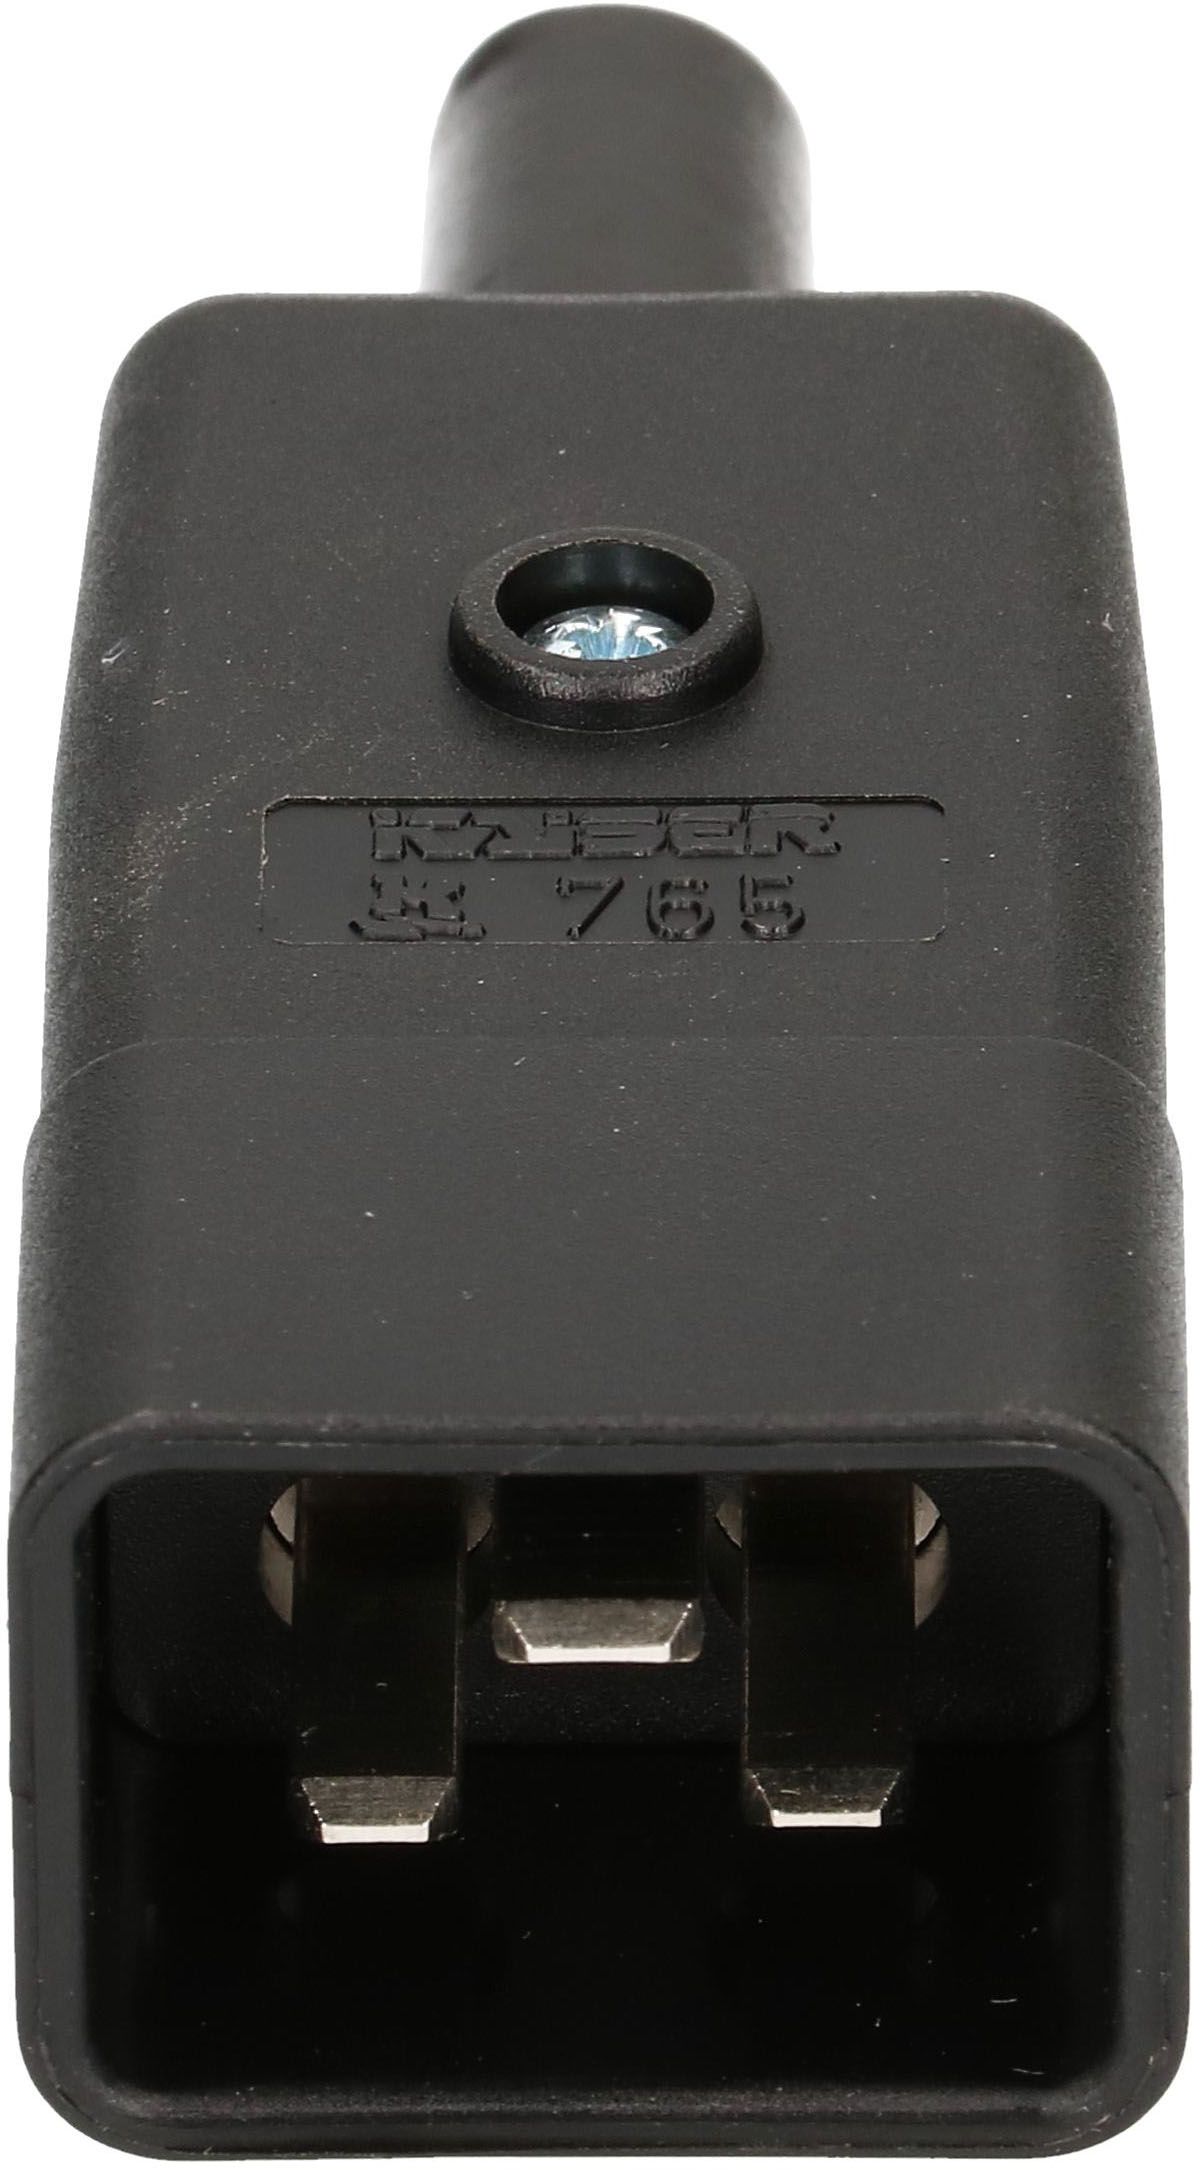 Apparatestecker Typ C20 3-polig schwarz